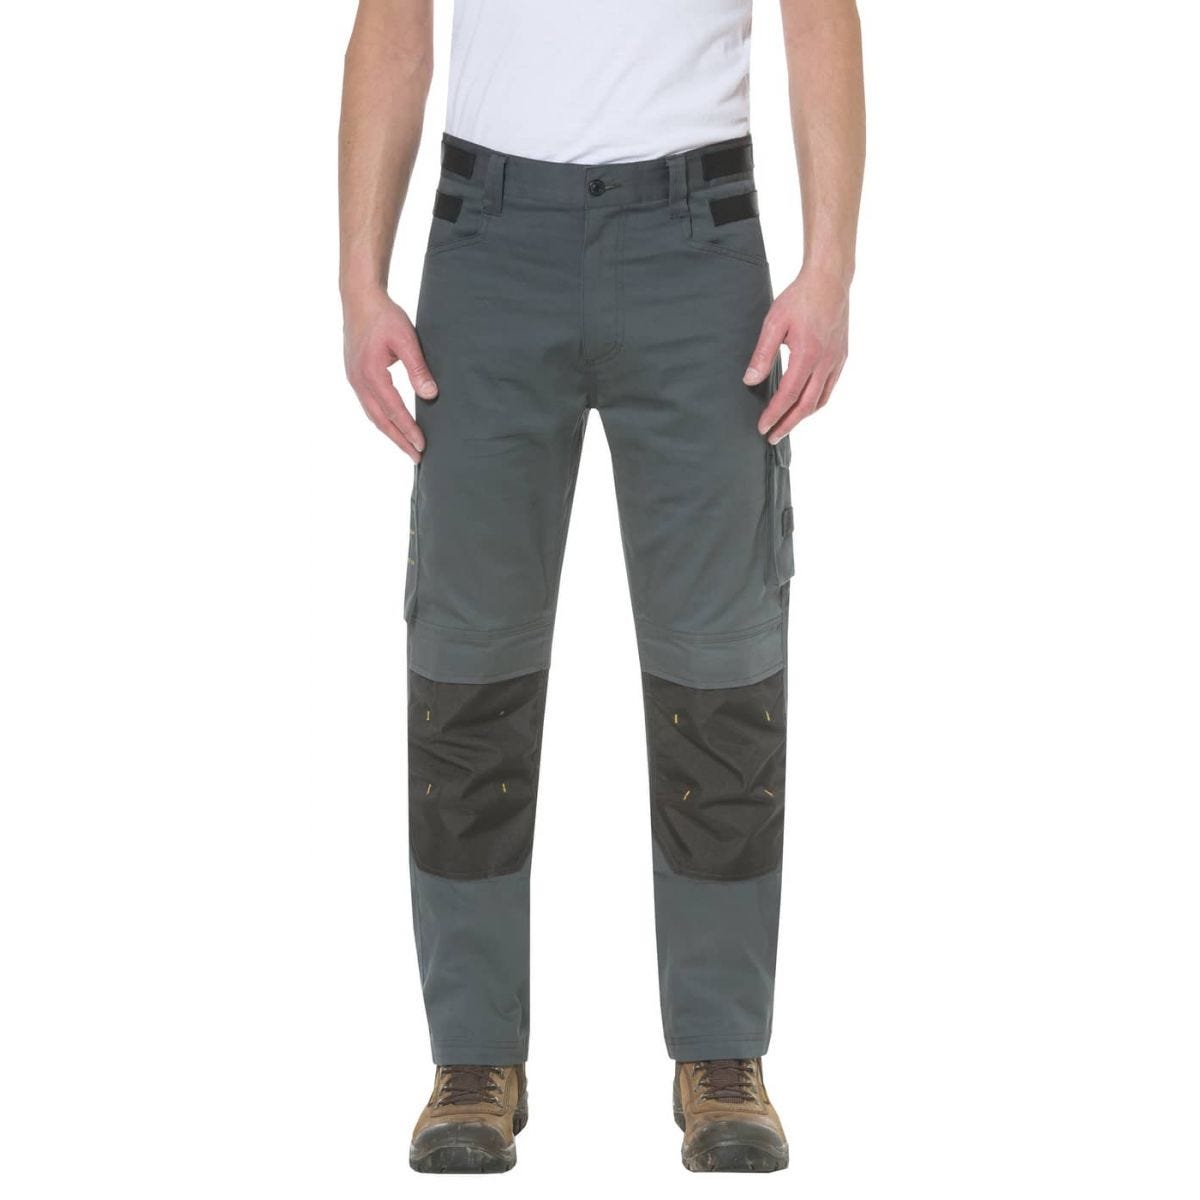 Pantalon de travail Custom Lite Gris et Noir - Caterpillar - Taille 44 0